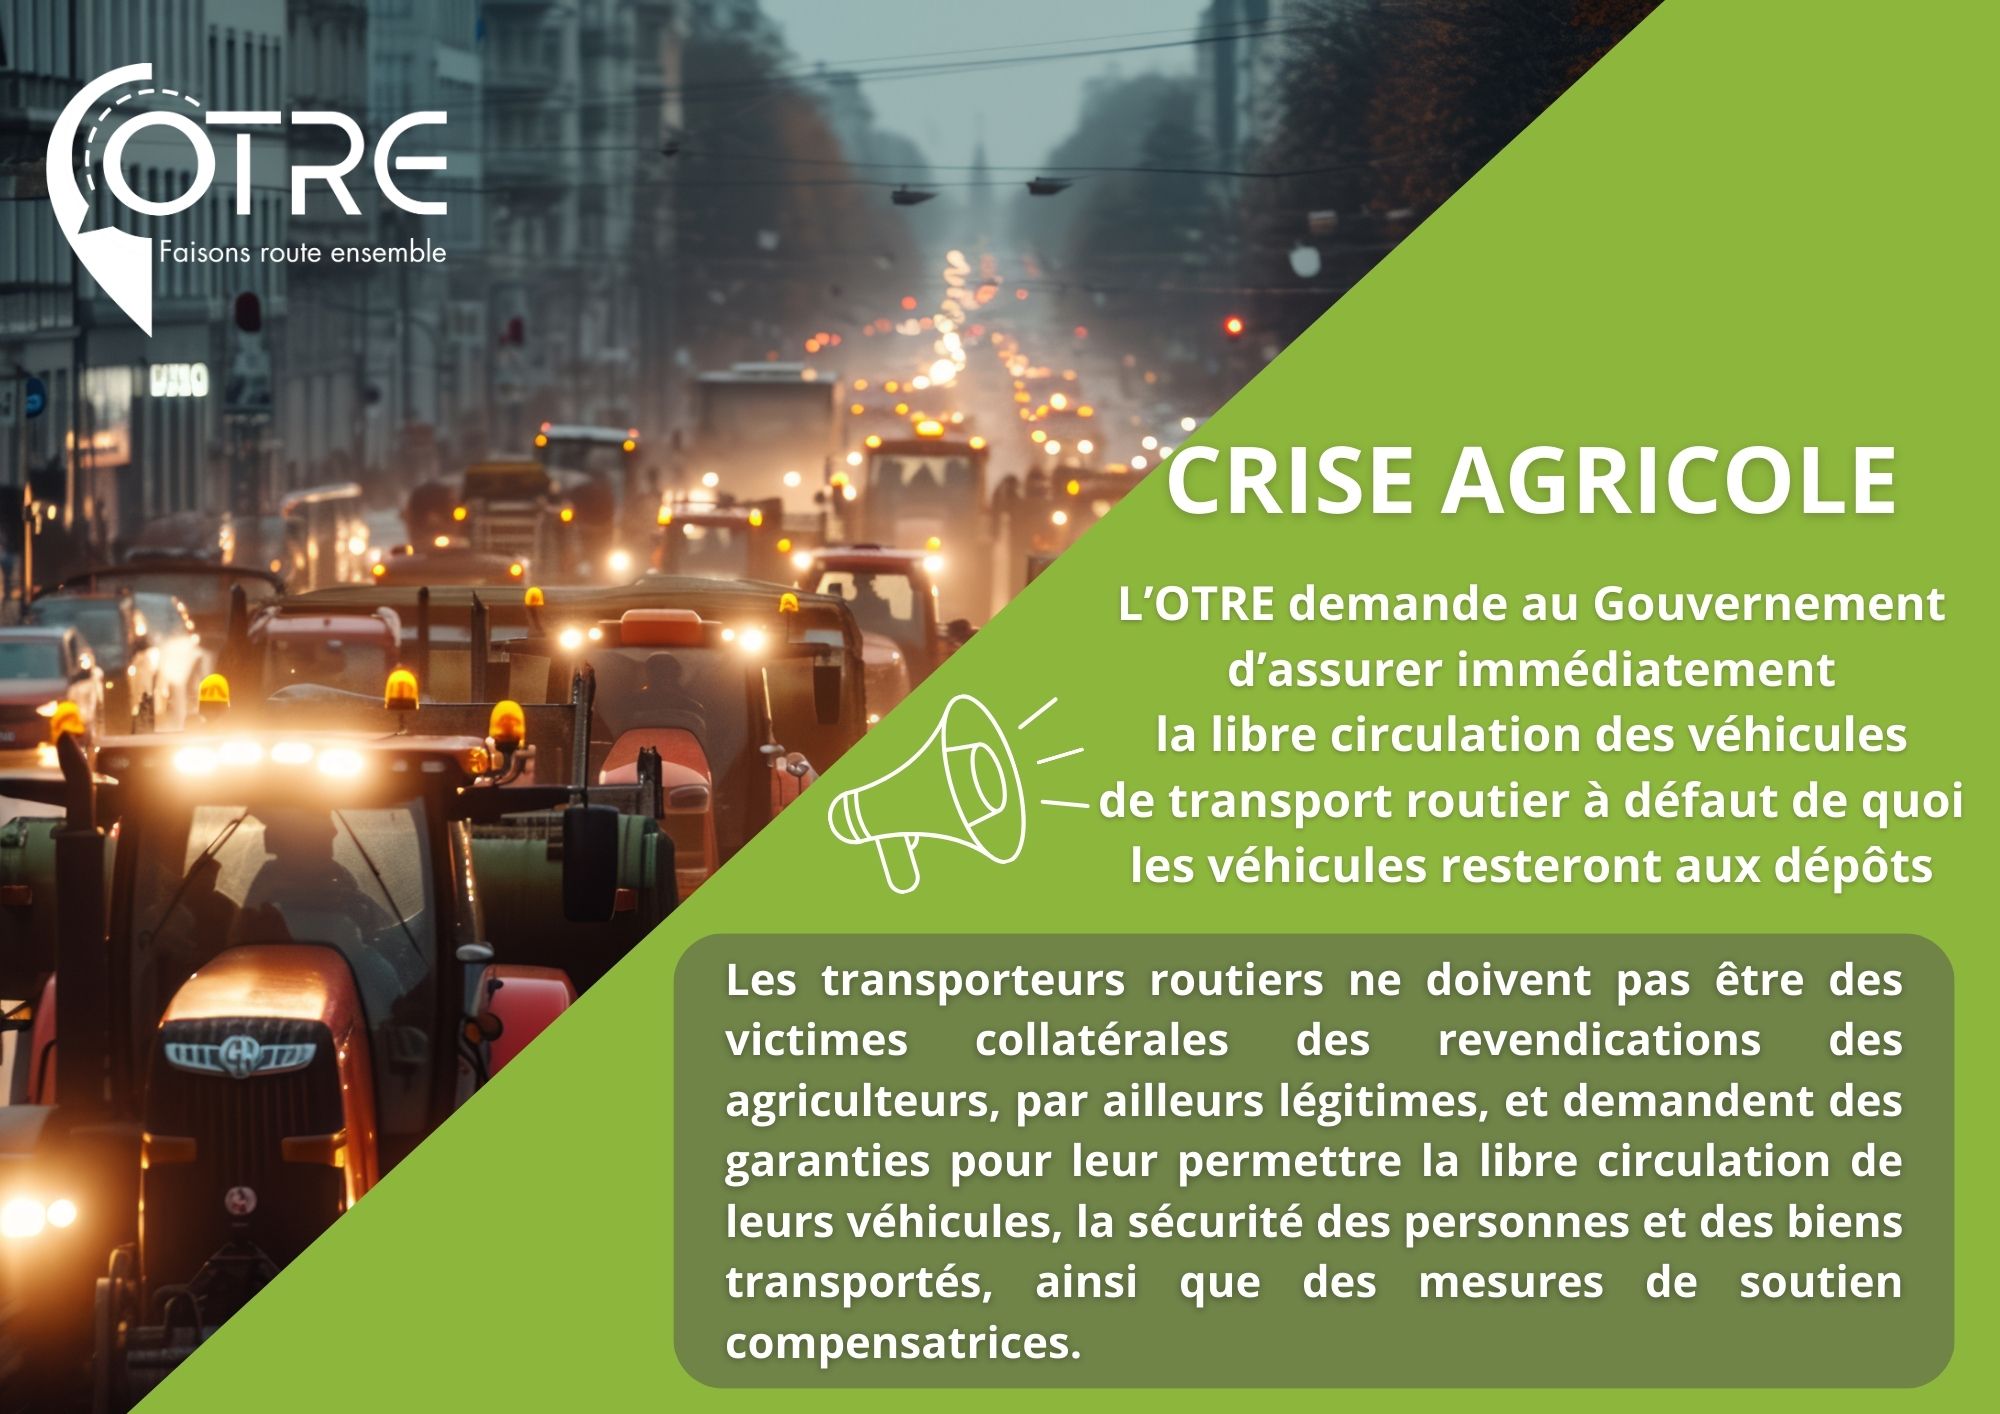 Crise Agricole : L’OTRE demande au Gouvernement d’assurer immédiatement la libre circulation des véhicules de transport routier à défaut de quoi les véhicules resteront aux dépôts